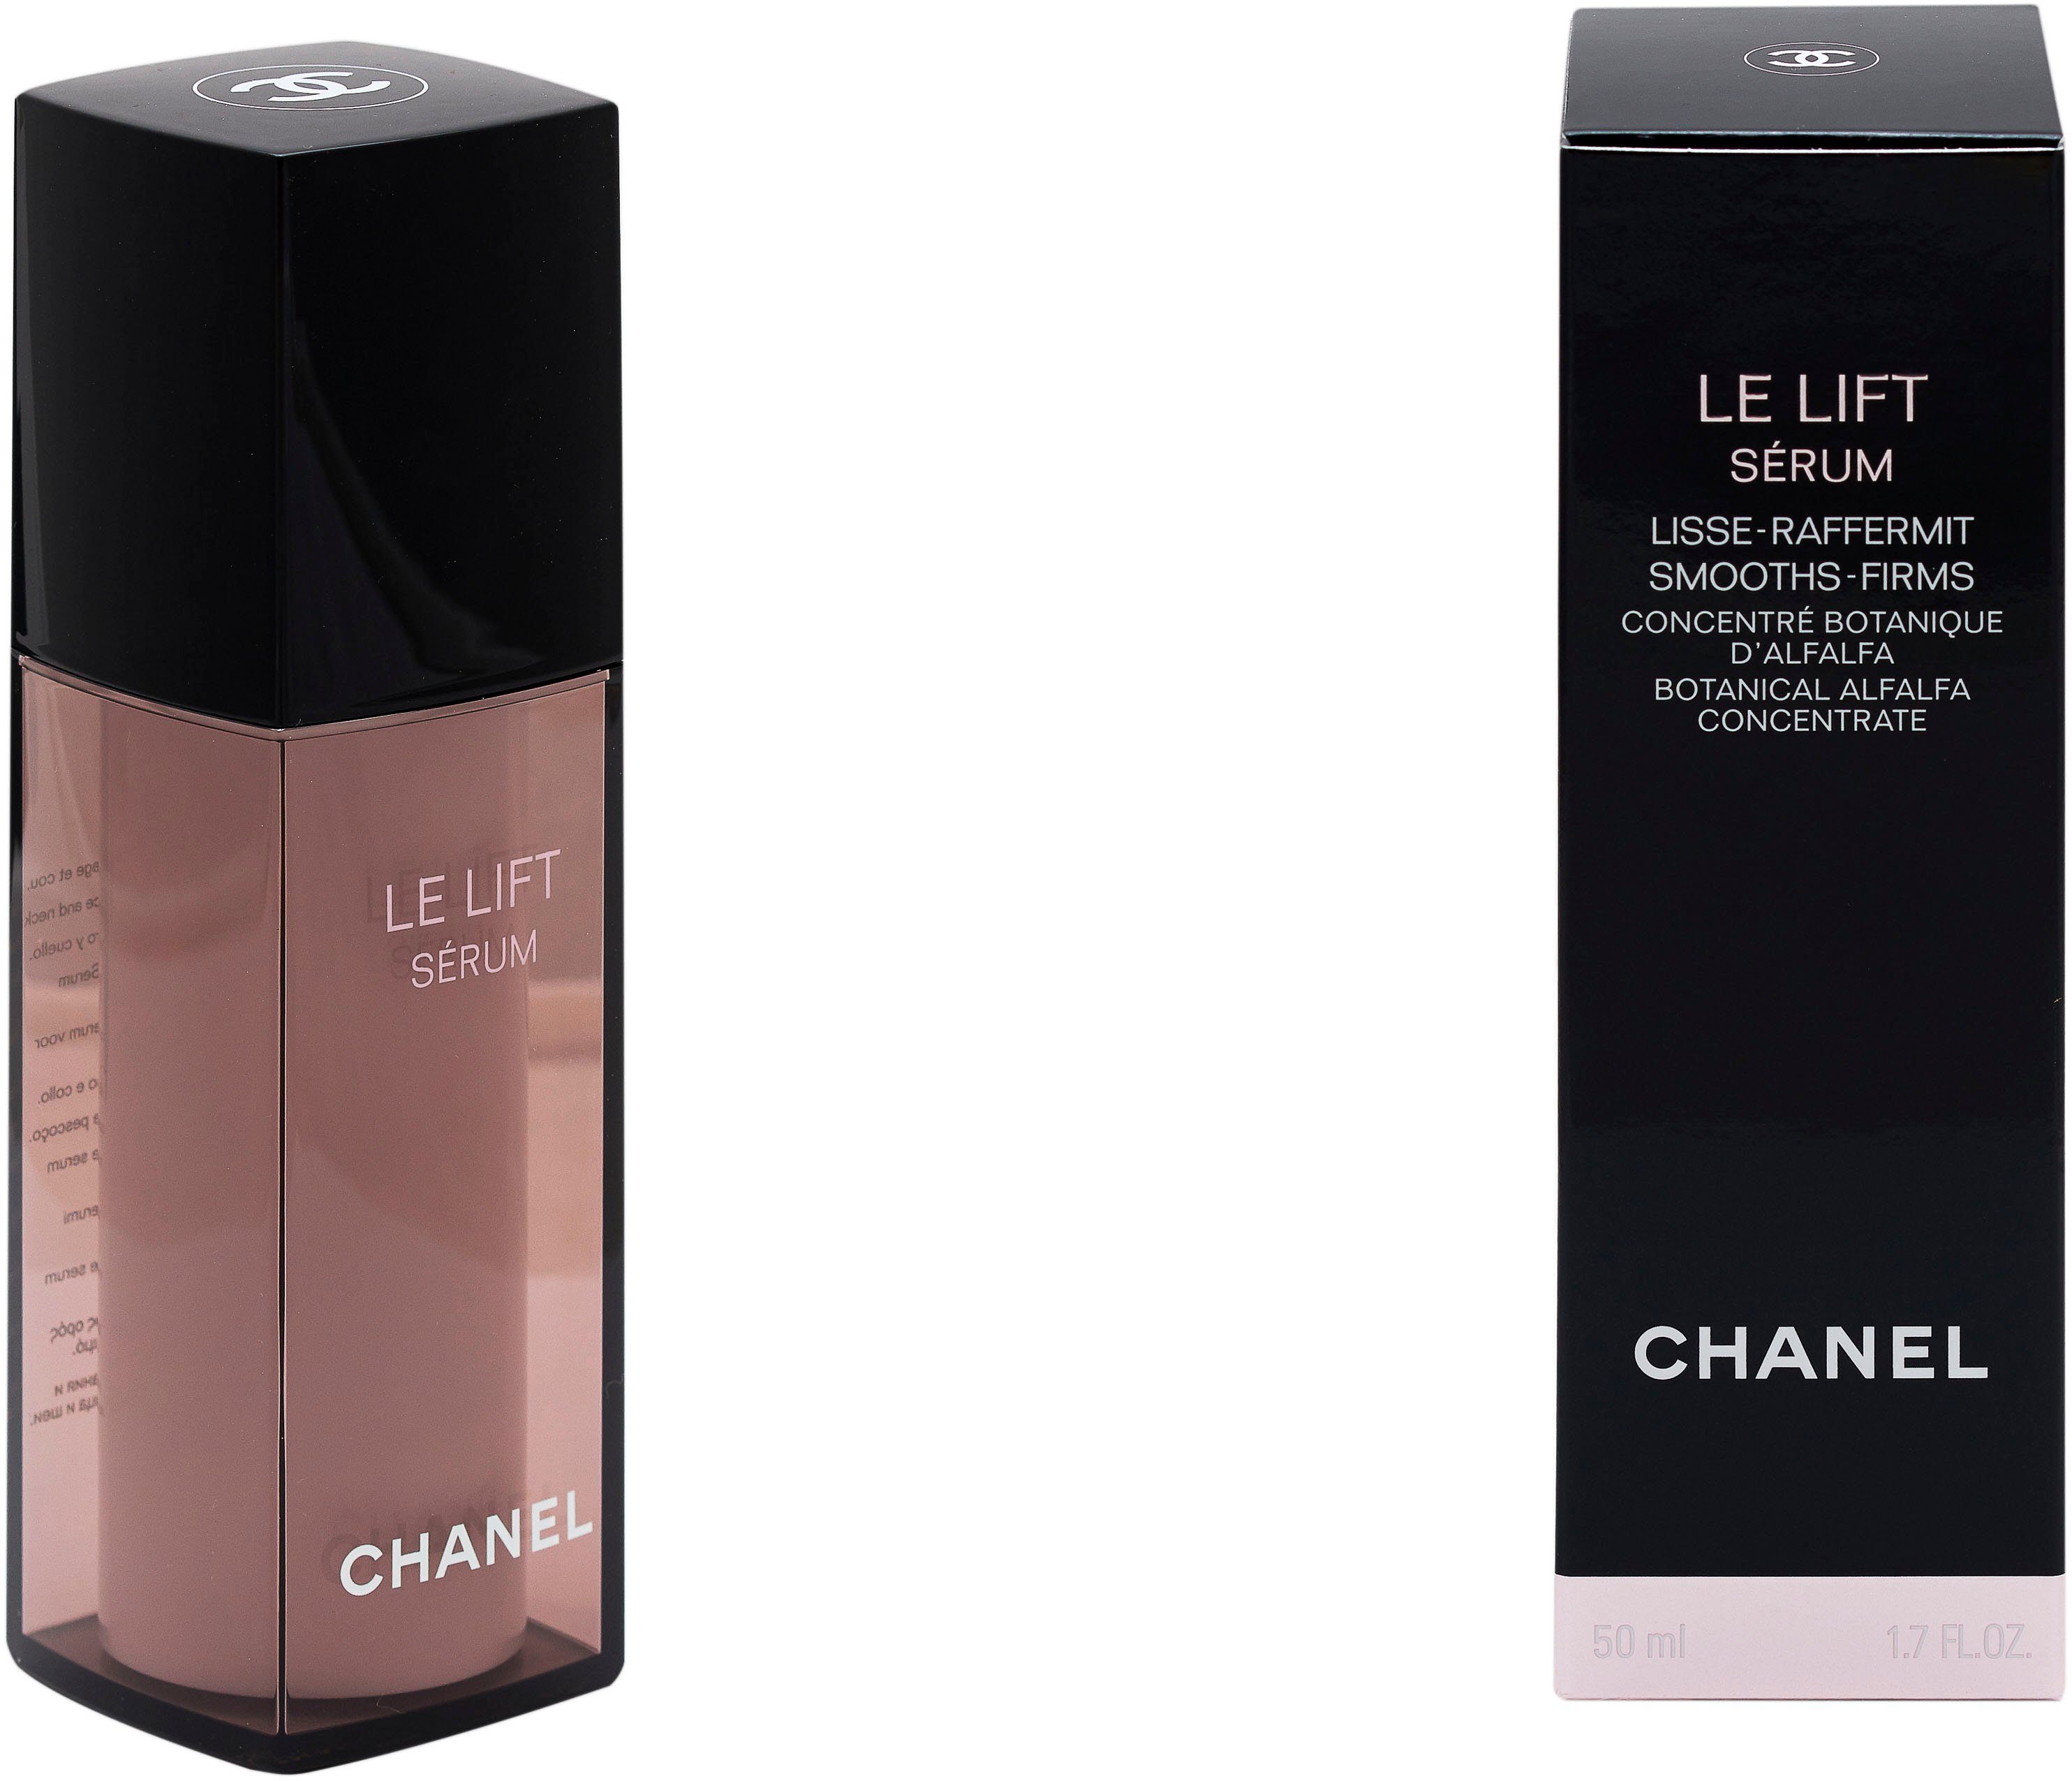 Lisse-Raffermint Serum CHANEL Gesichtsserum Lift Chanel Le